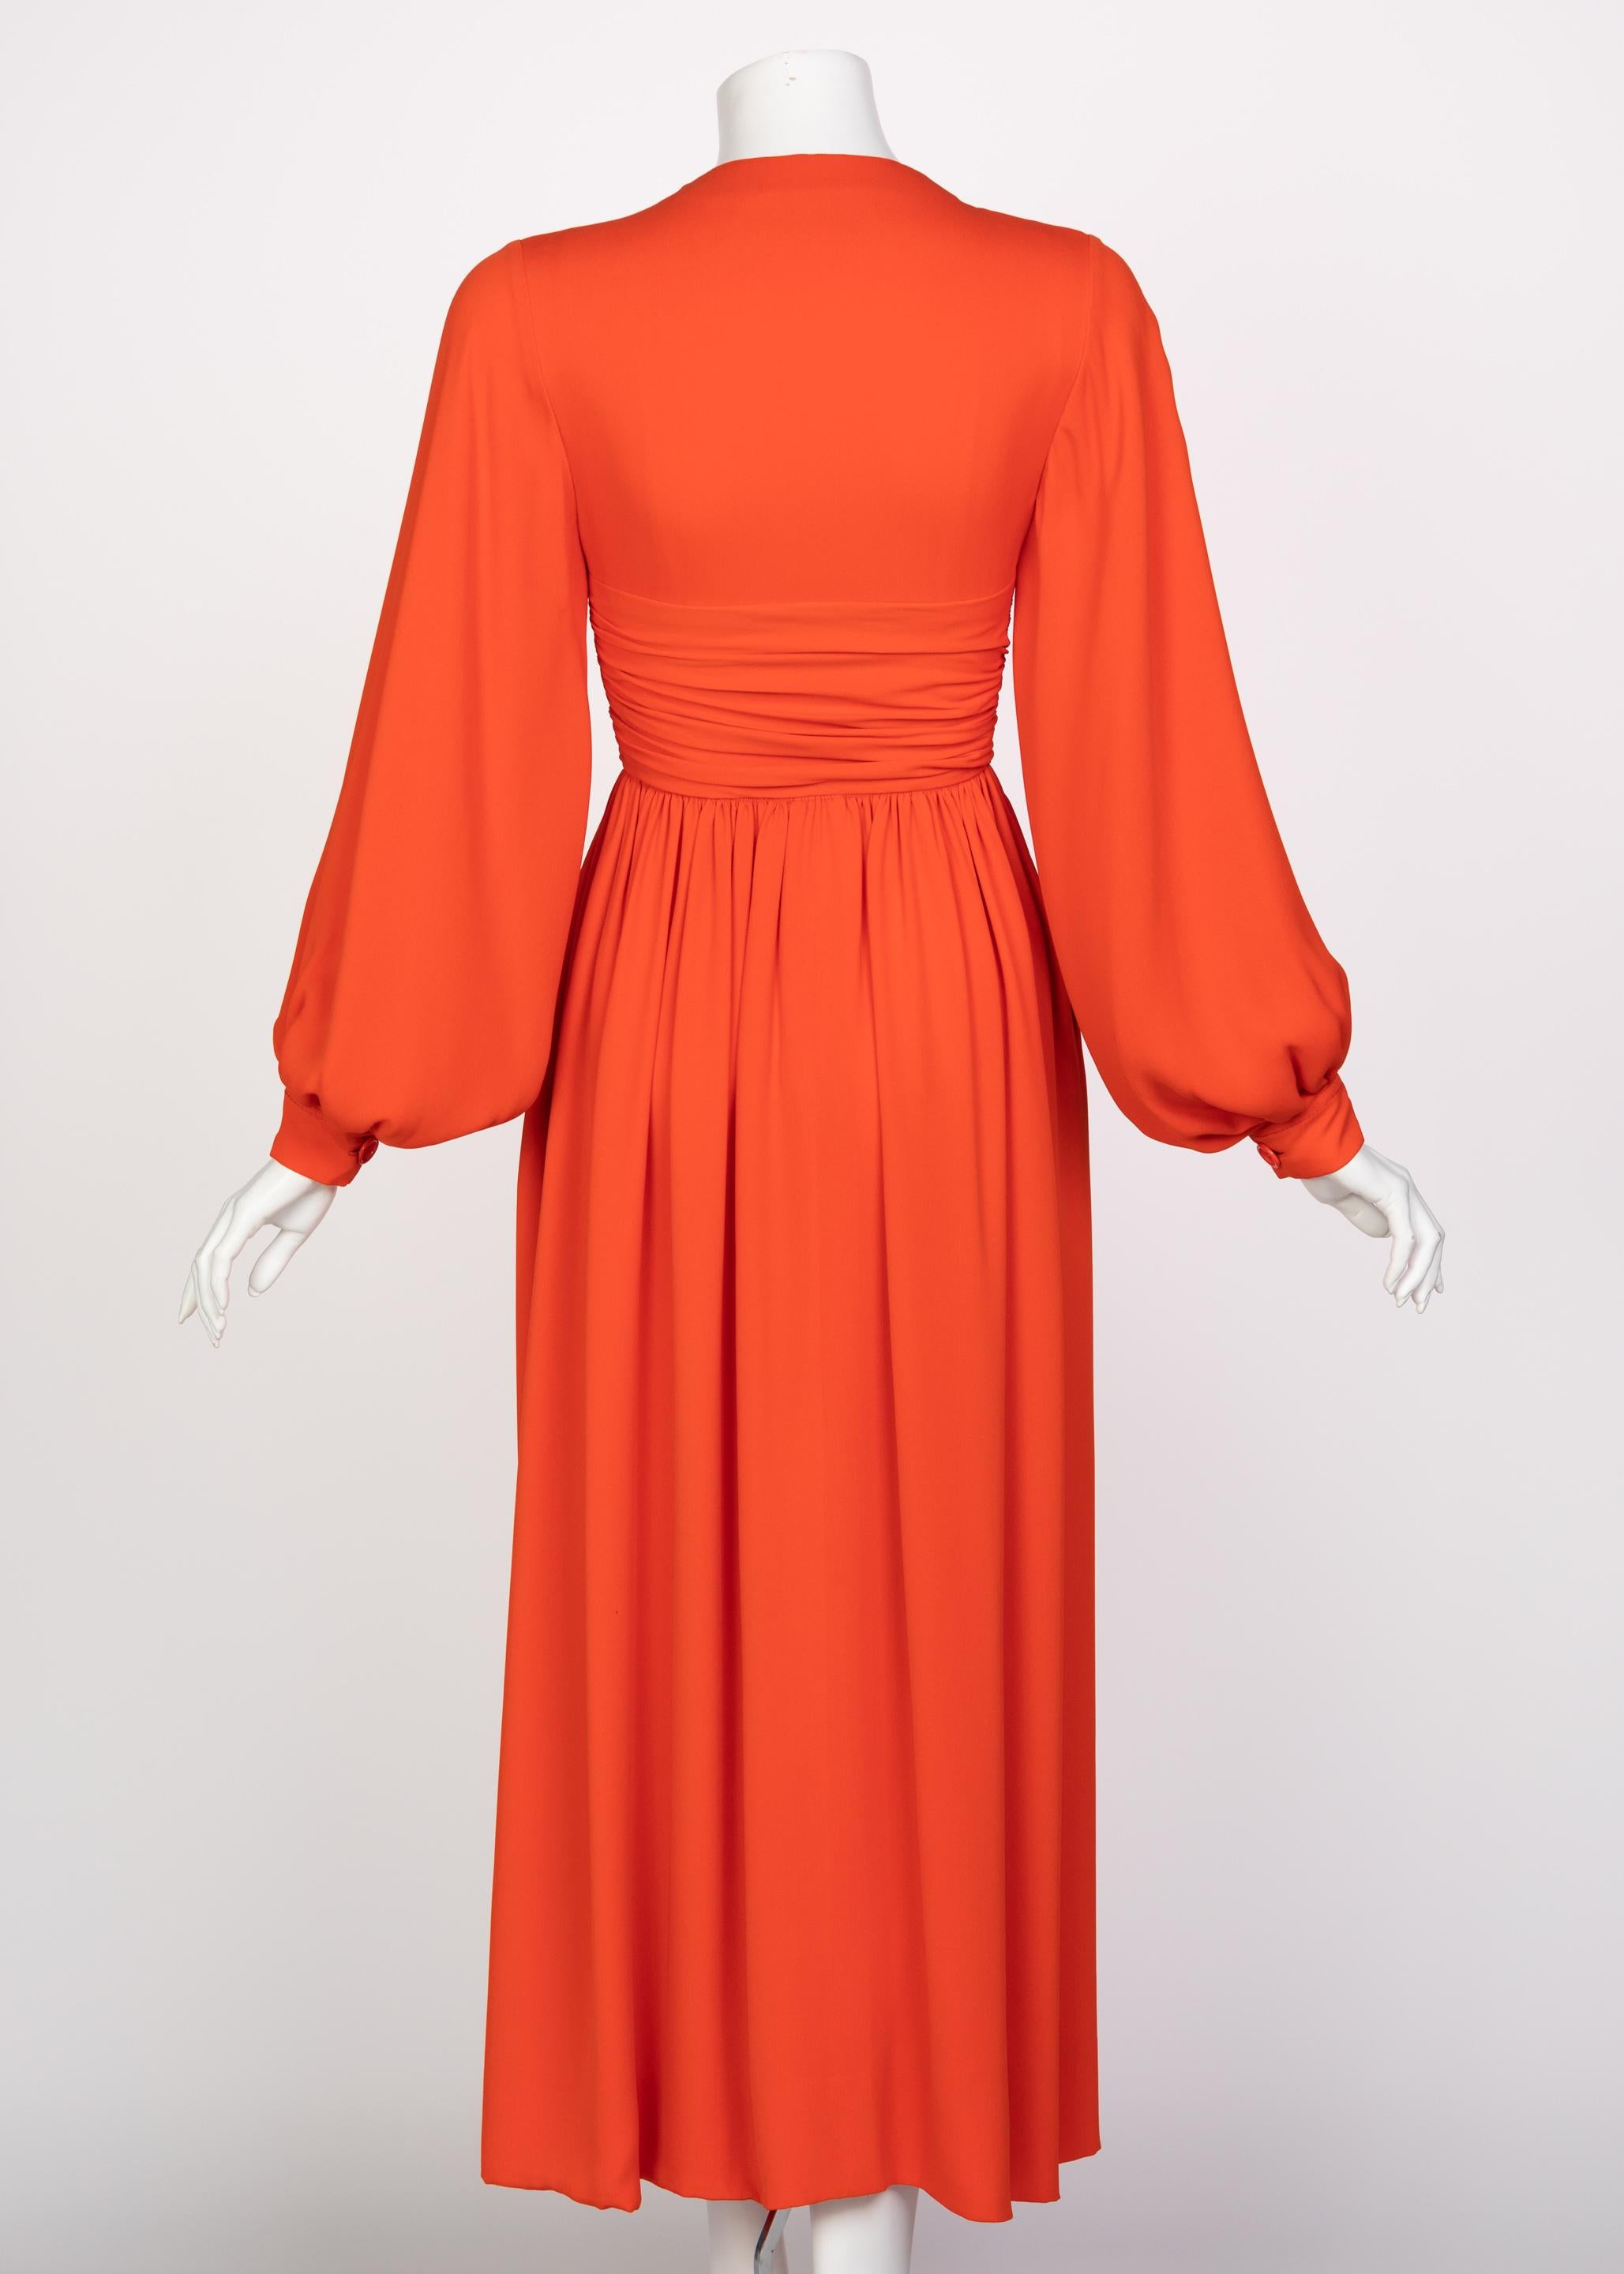 Women's or Men's Galanos Orange Silk Plunge Neck Bishop Sleeve Dress, 1970s